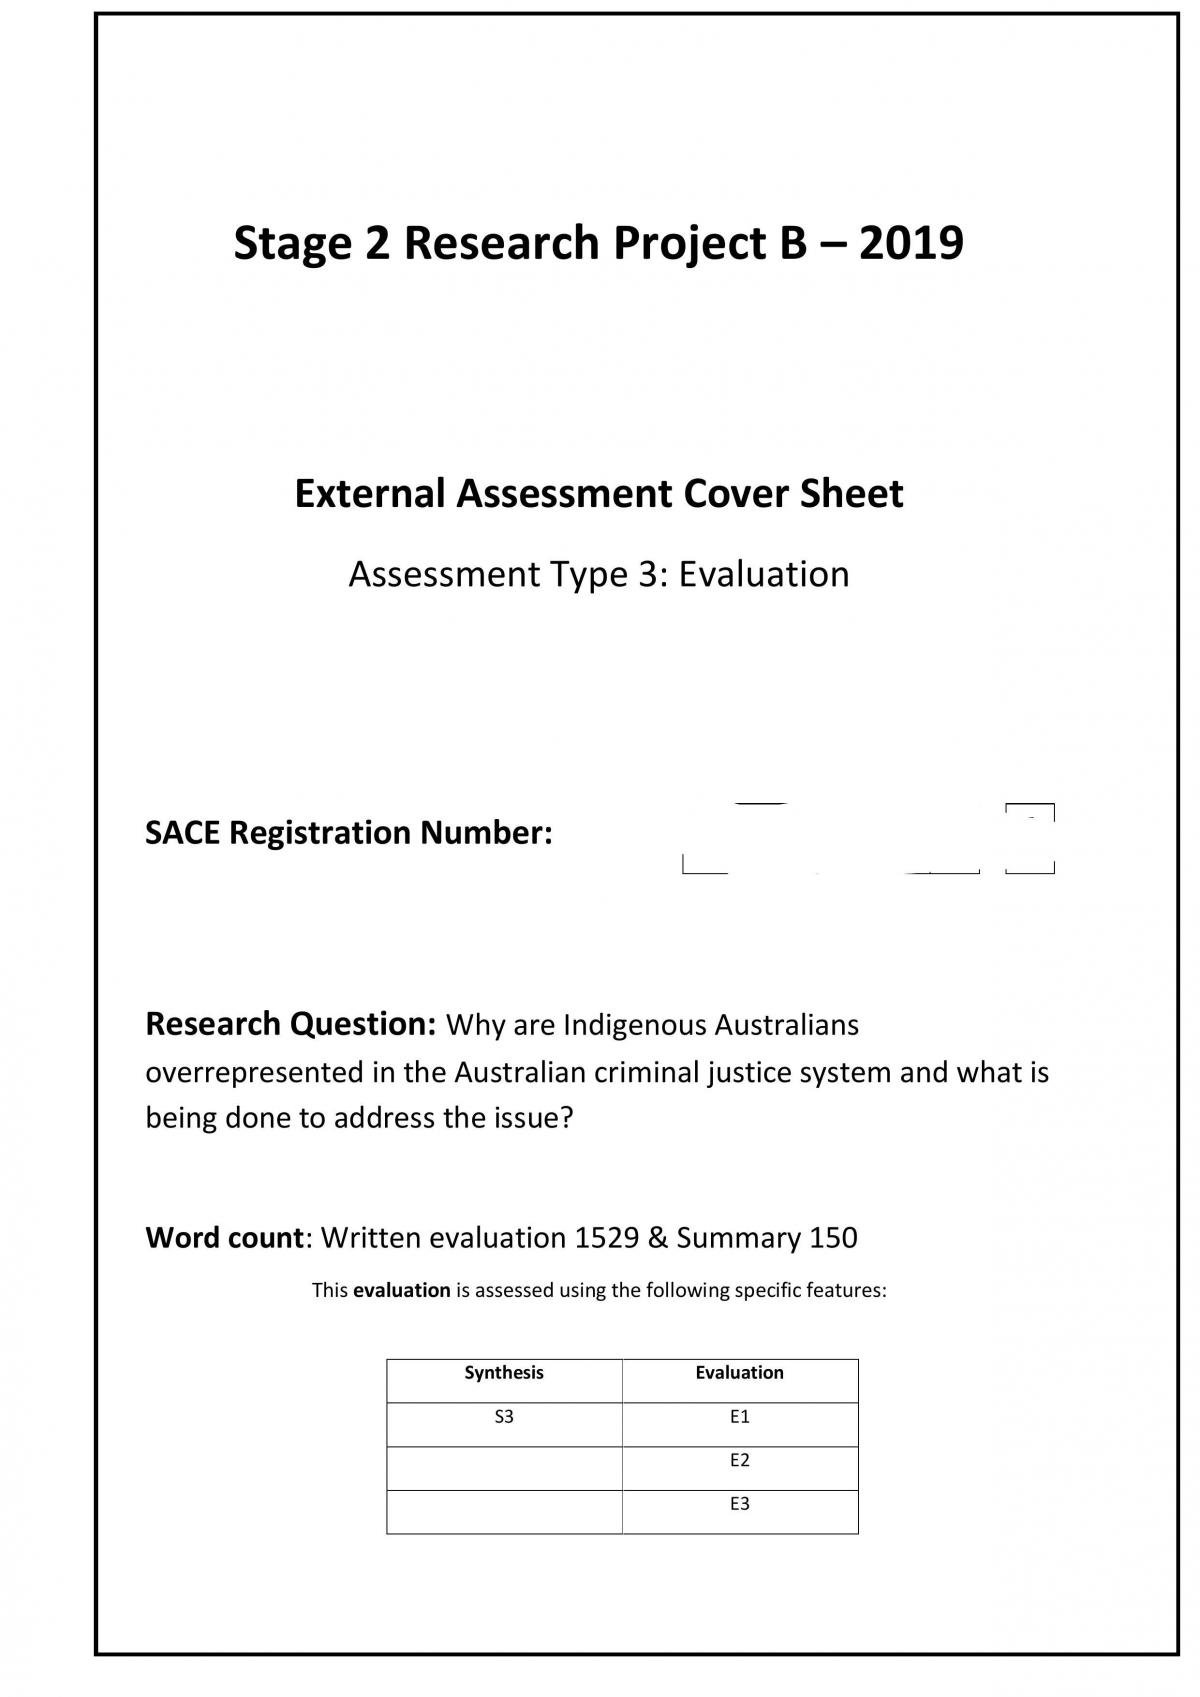 RP Evaluation - Indigenous Australians - Page 1